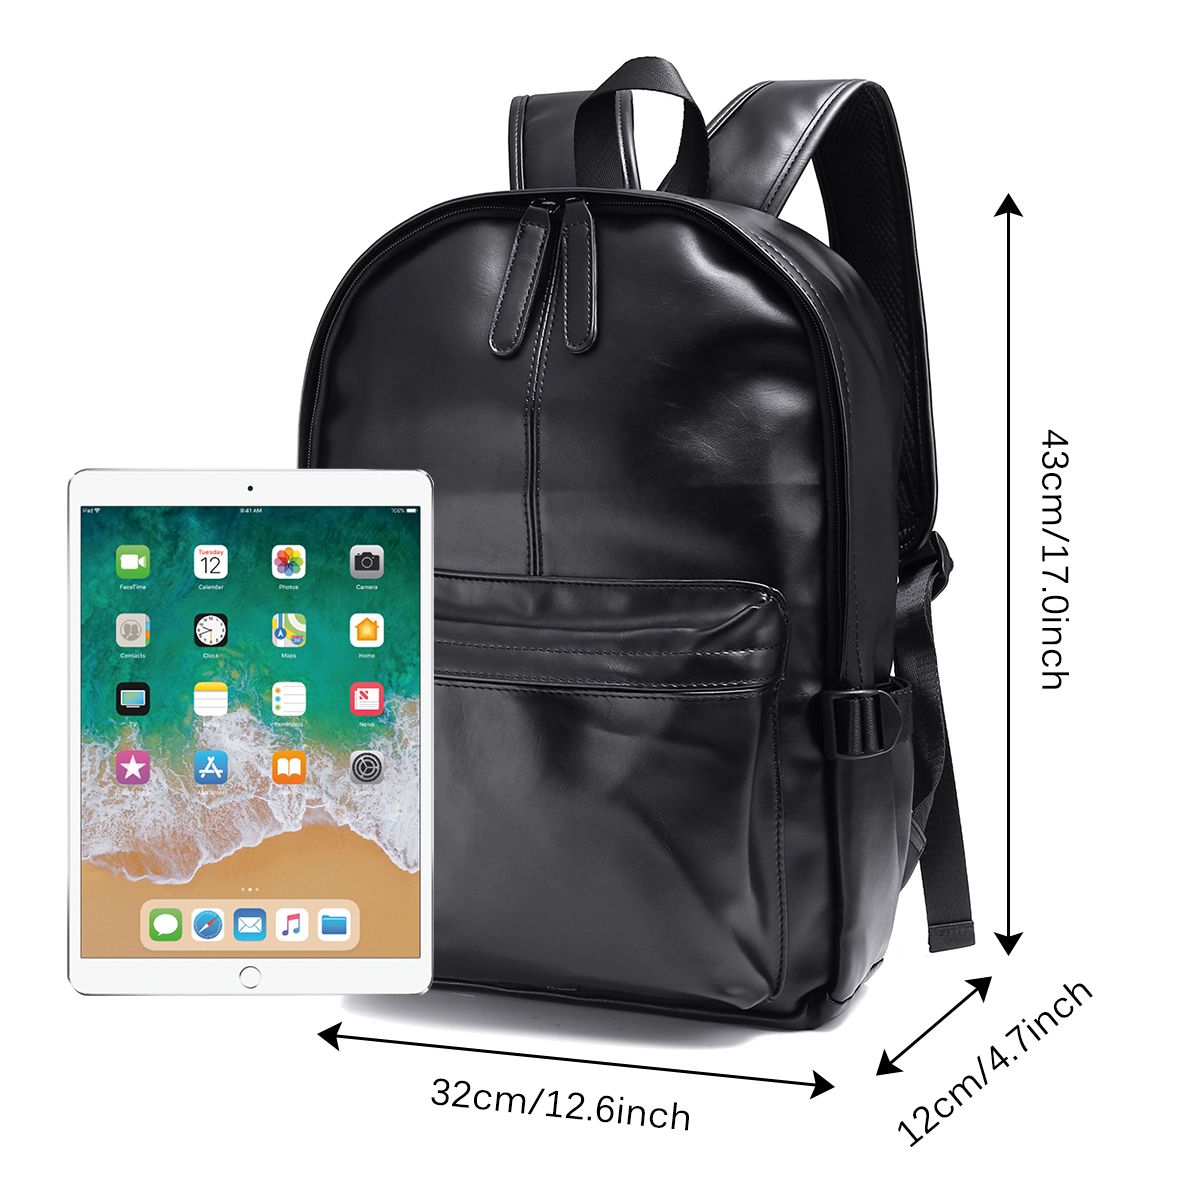 PU-Leather-Backpack-Laptop-Bag-Shoulders-Storage-Bag-Mens-Vintage-Schoolbag-Student-Satchel-Rucksack-1744290